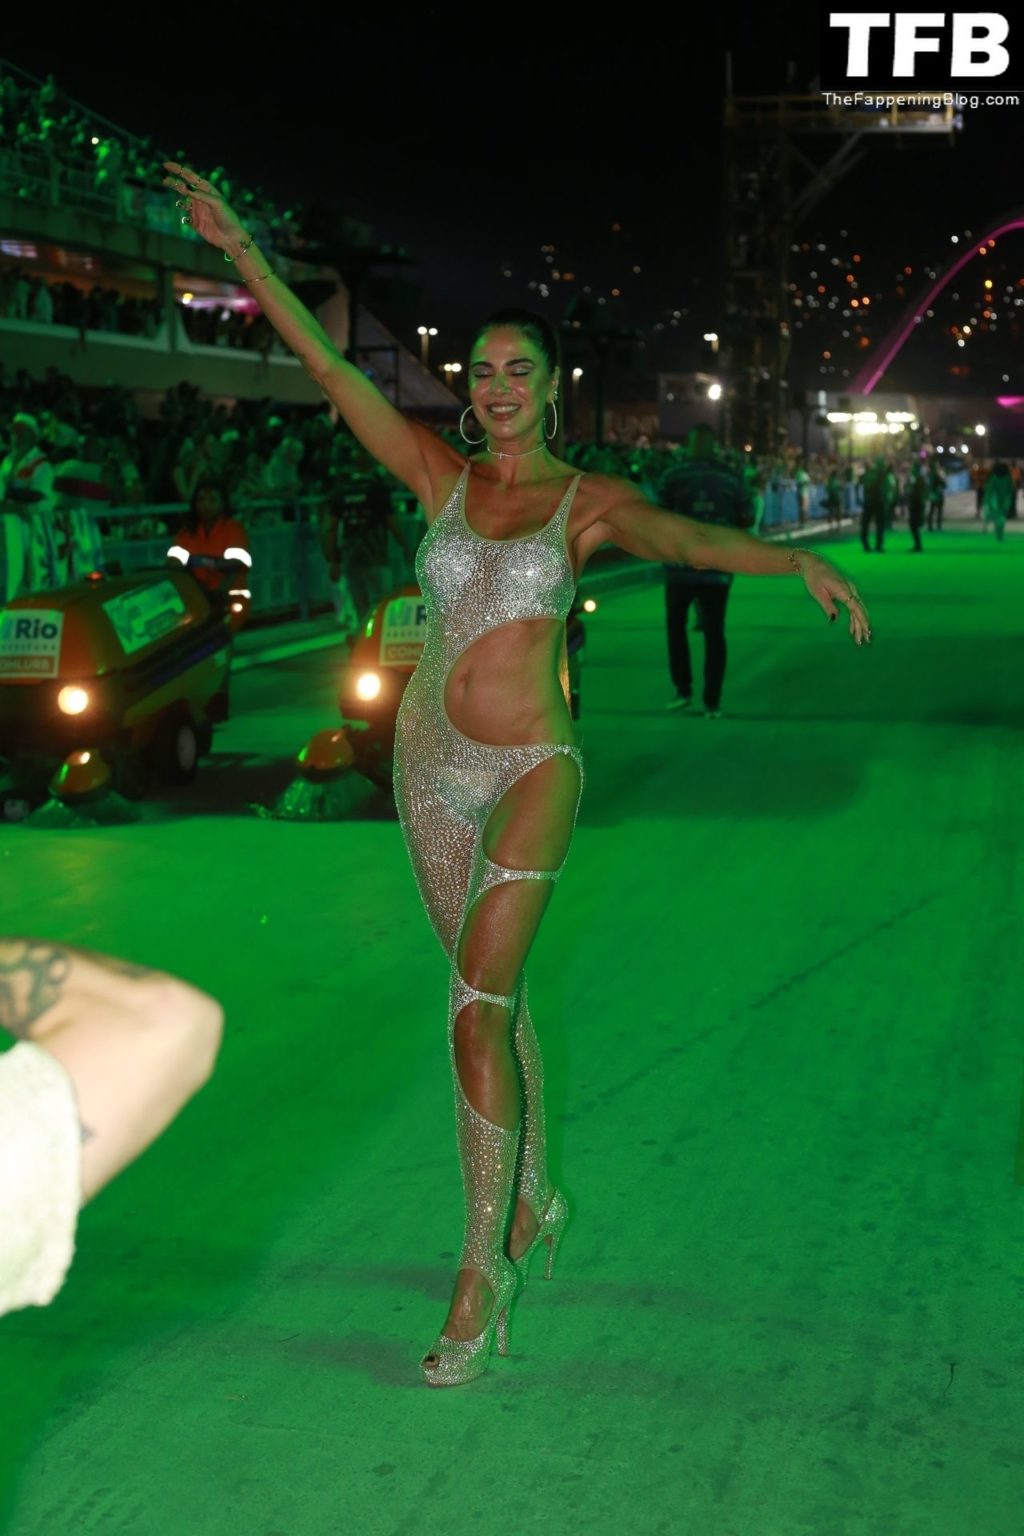 Luciana Gimenez Celebrates Sapucai in Rio de Janeiro (31 Photos)